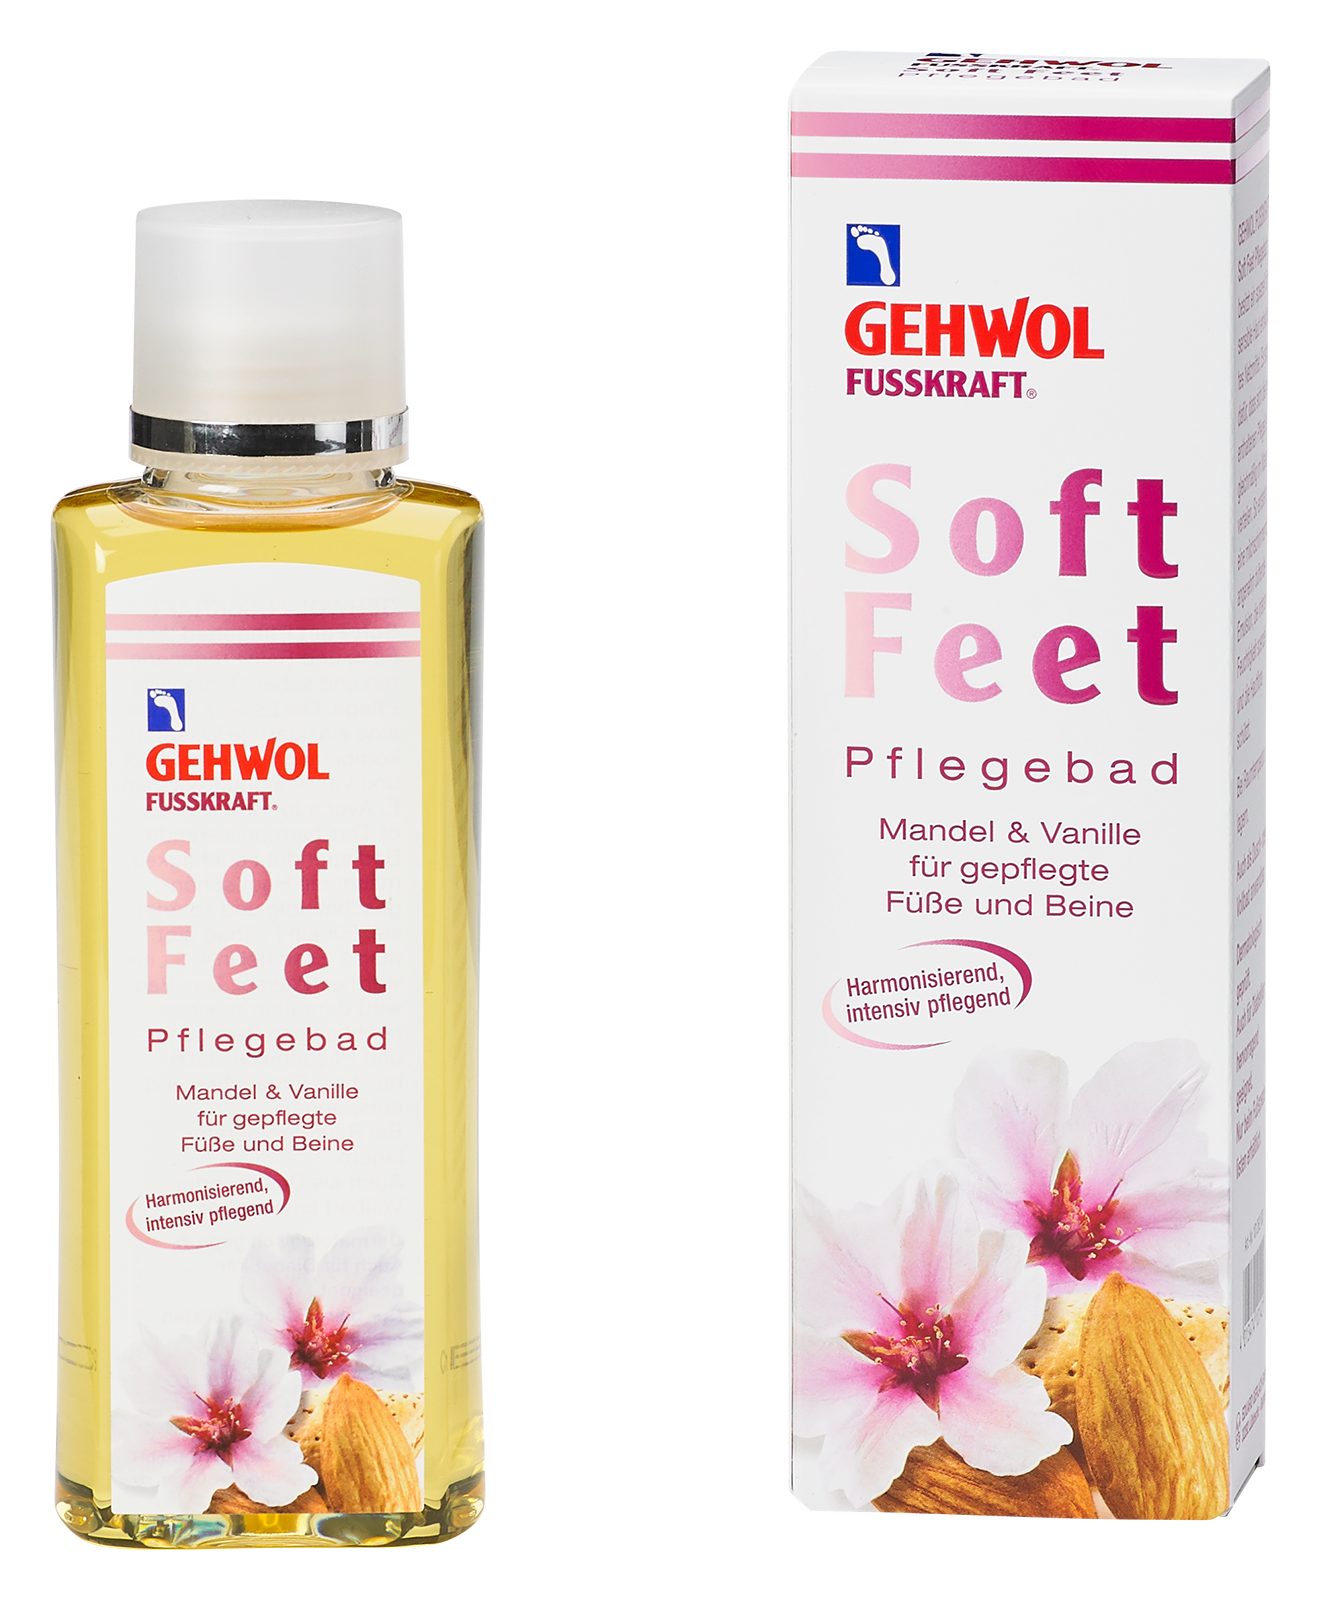 Gehwol Fußbad-Zusatz GEHWOL FUSSKRAFT Soft Feet Bad Mandel&Vanille, gepflegte Füße&Beine | Badezusätze